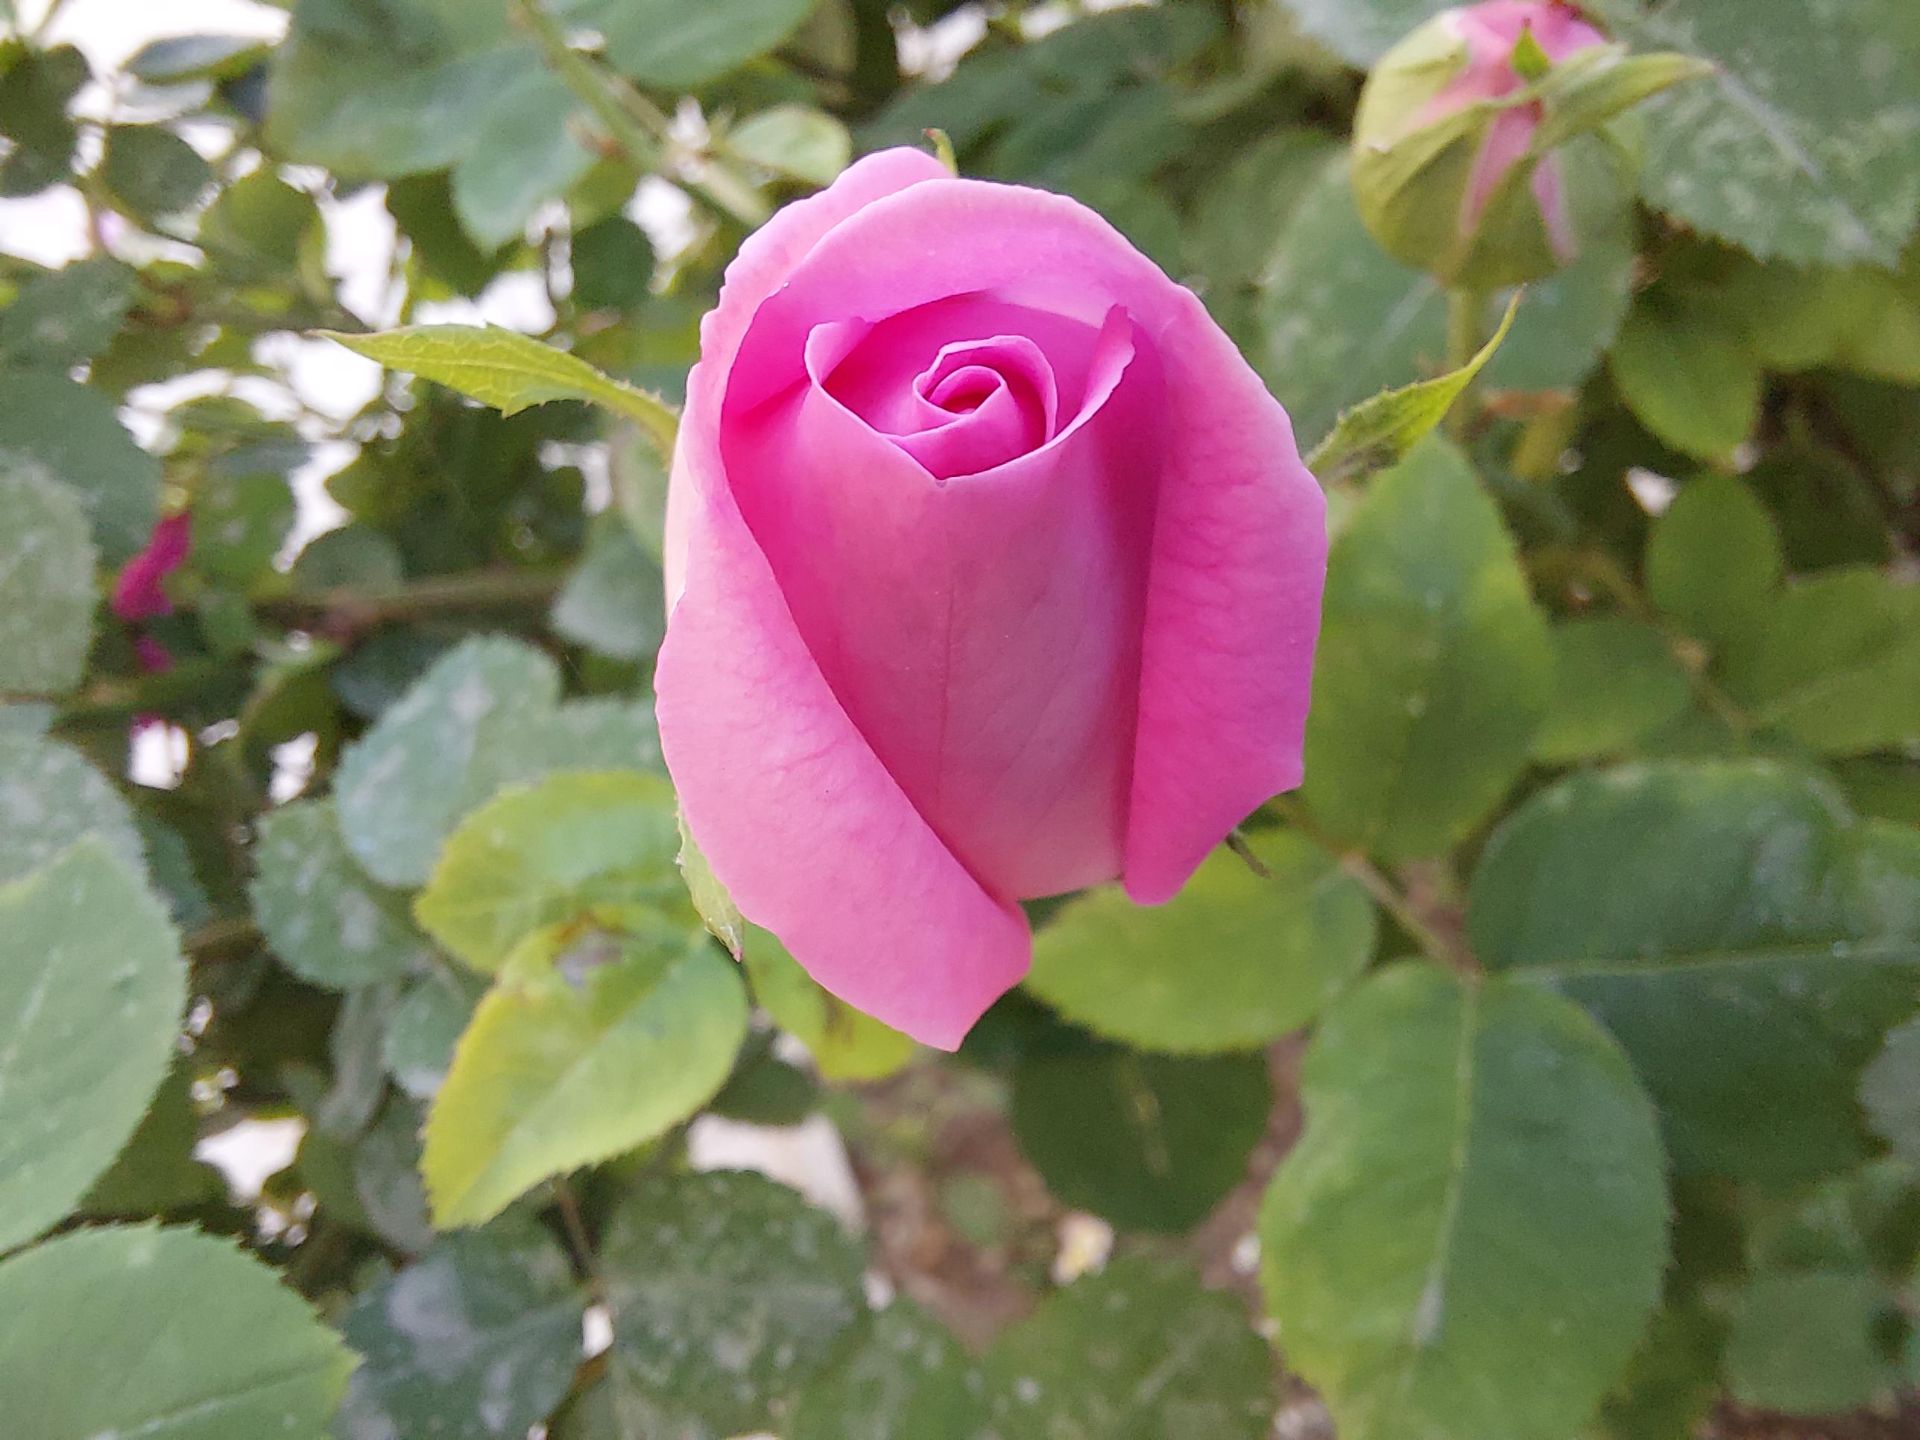 عکس نمونه دوربین ماکرو گلکسی A52 - یک گل رز از نمای نزدیک